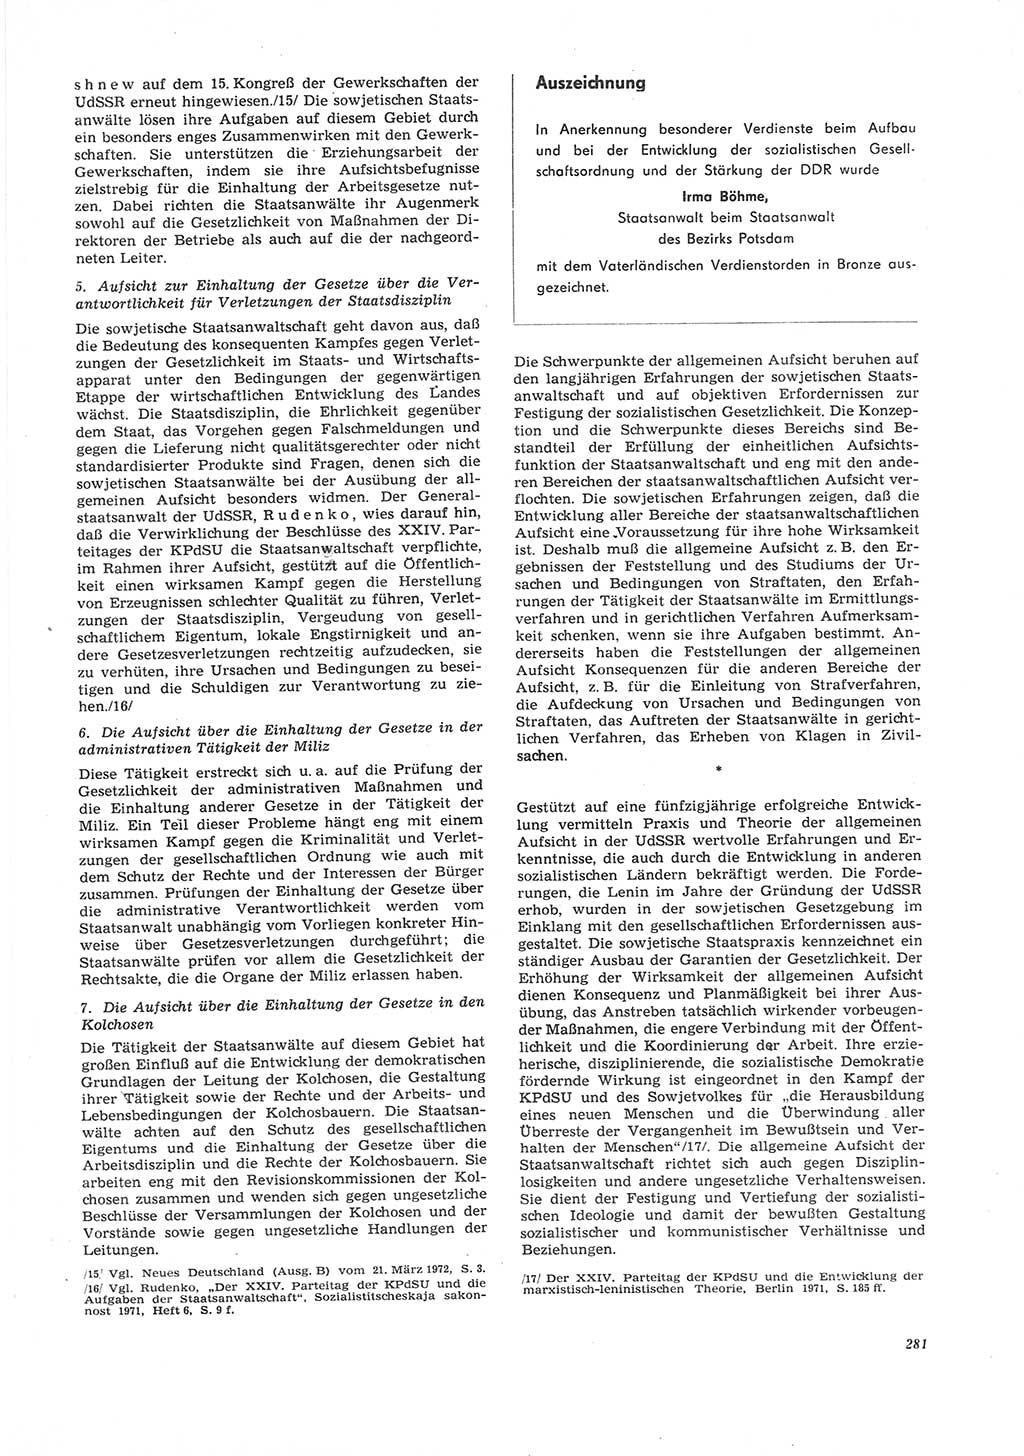 Neue Justiz (NJ), Zeitschrift für Recht und Rechtswissenschaft [Deutsche Demokratische Republik (DDR)], 26. Jahrgang 1972, Seite 281 (NJ DDR 1972, S. 281)